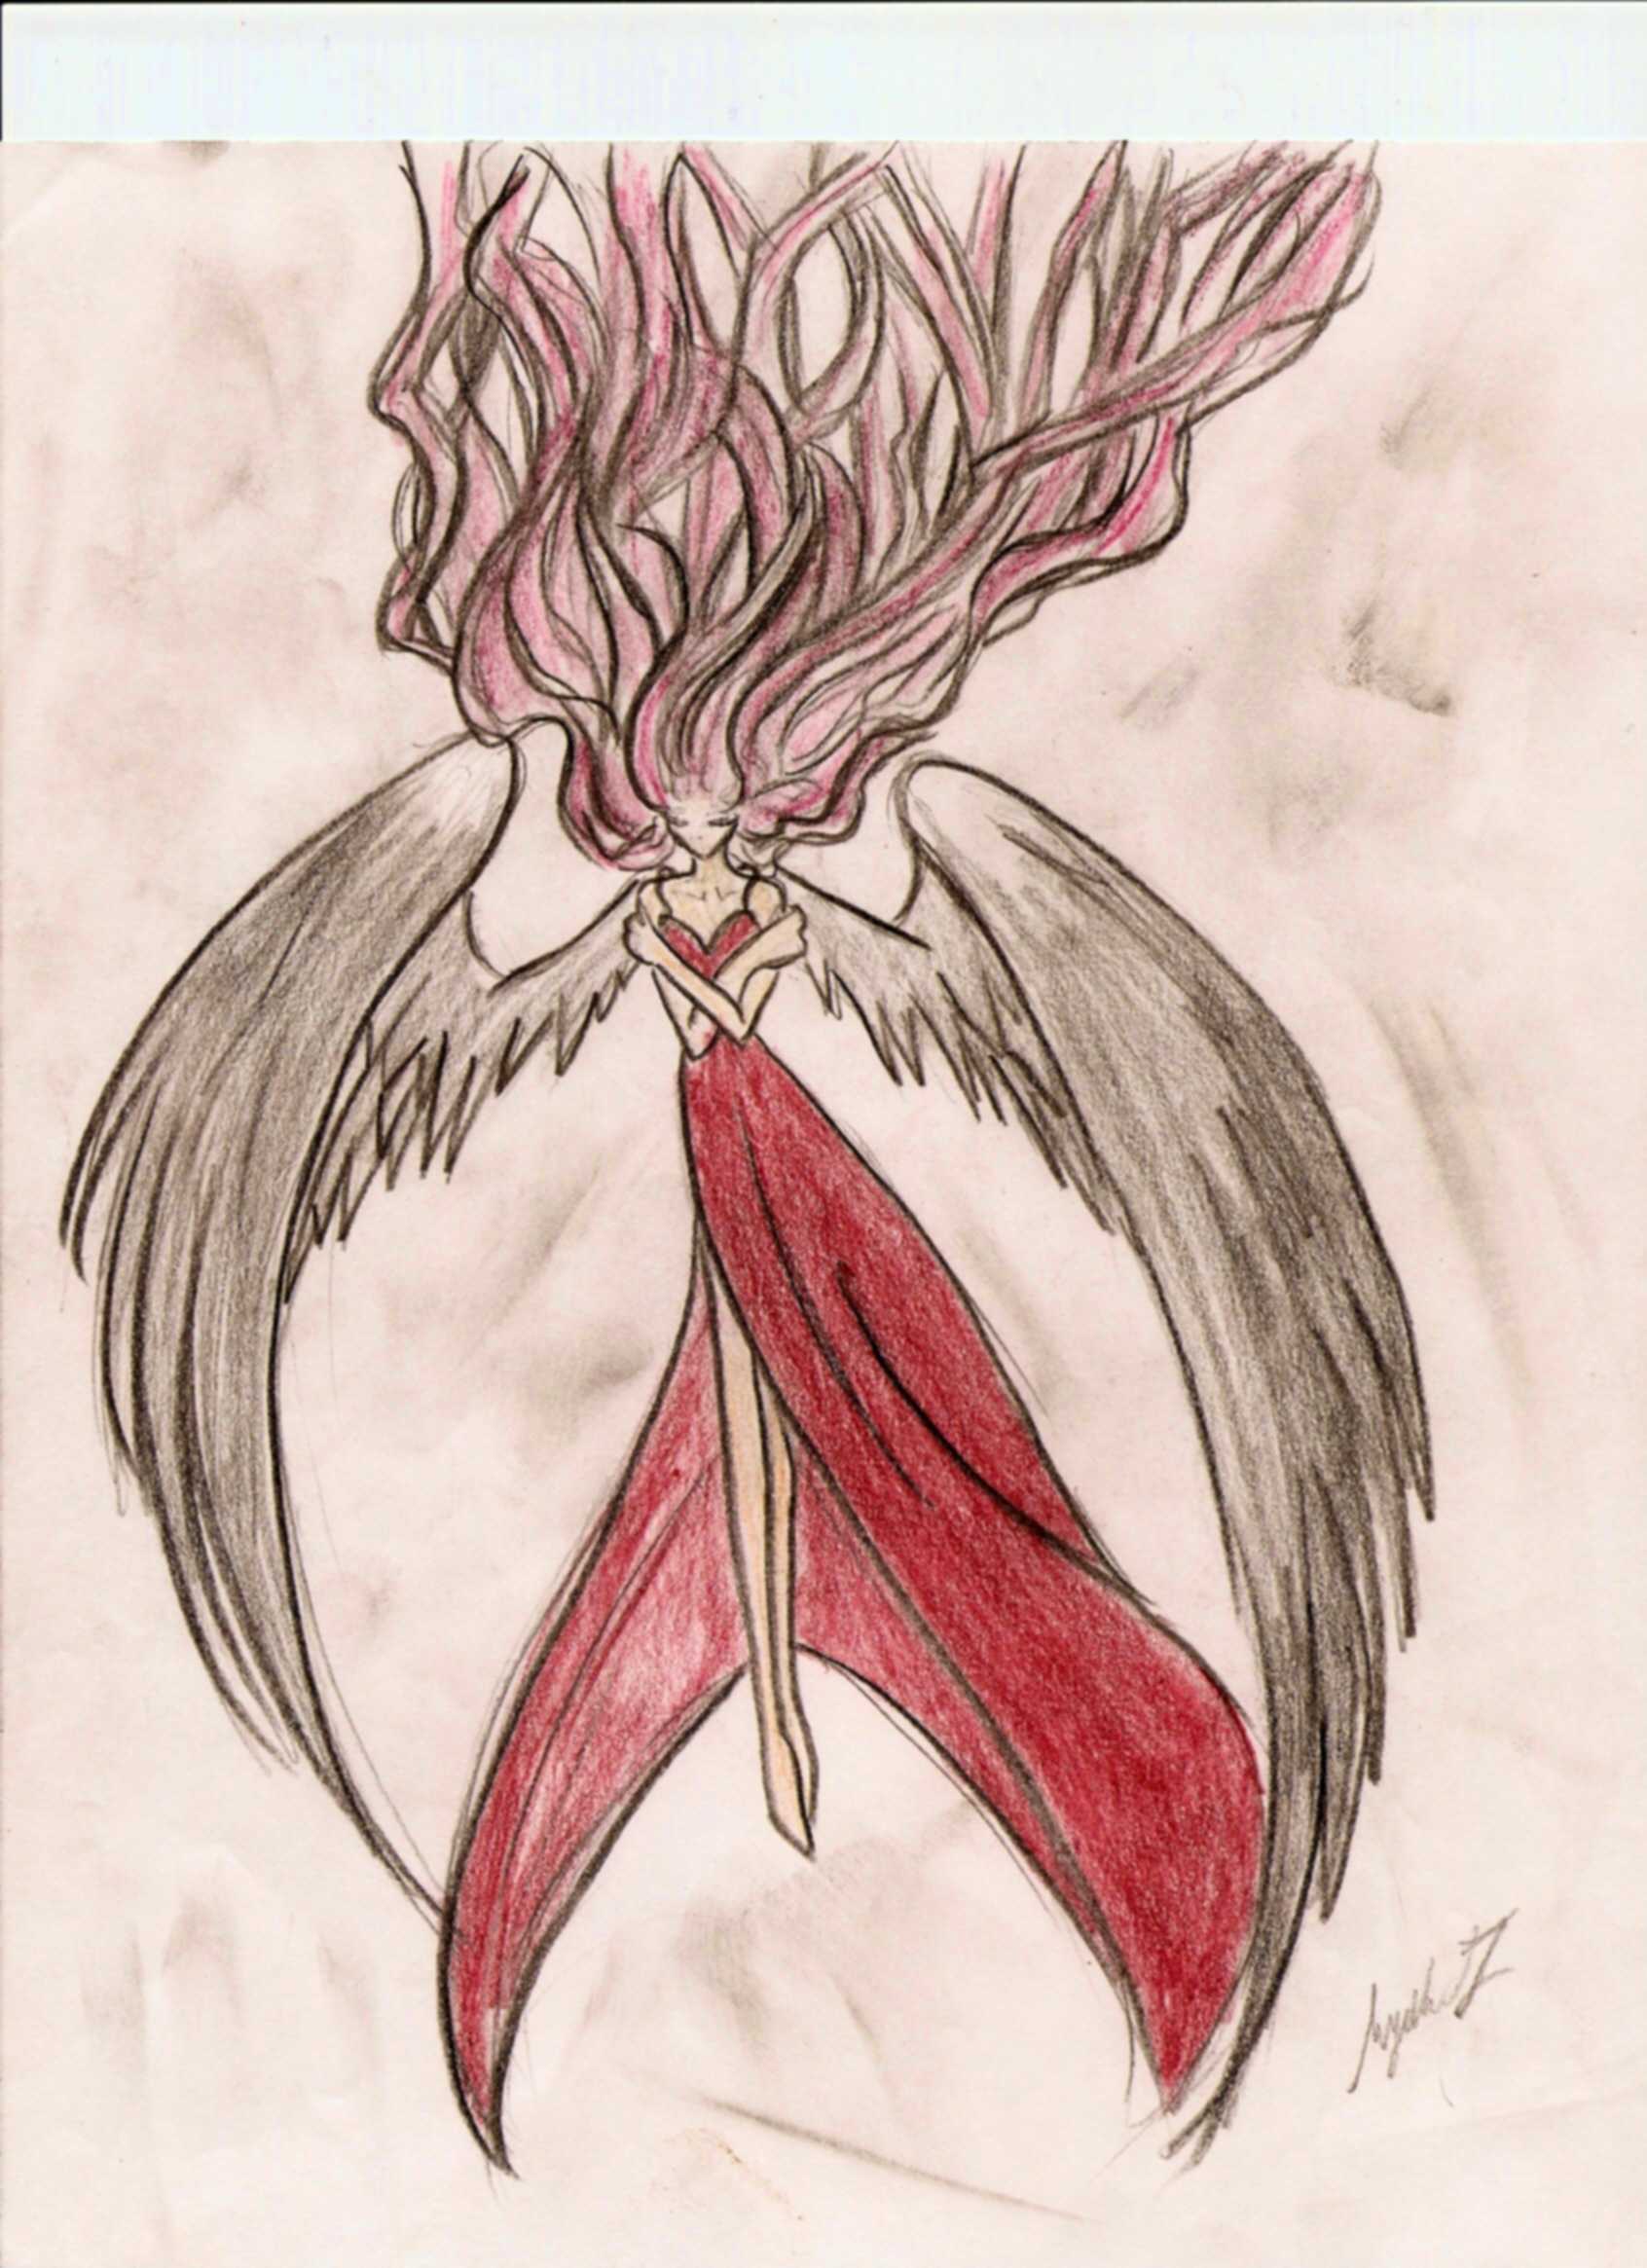 Raven's Dusk III heart afire by Vesper